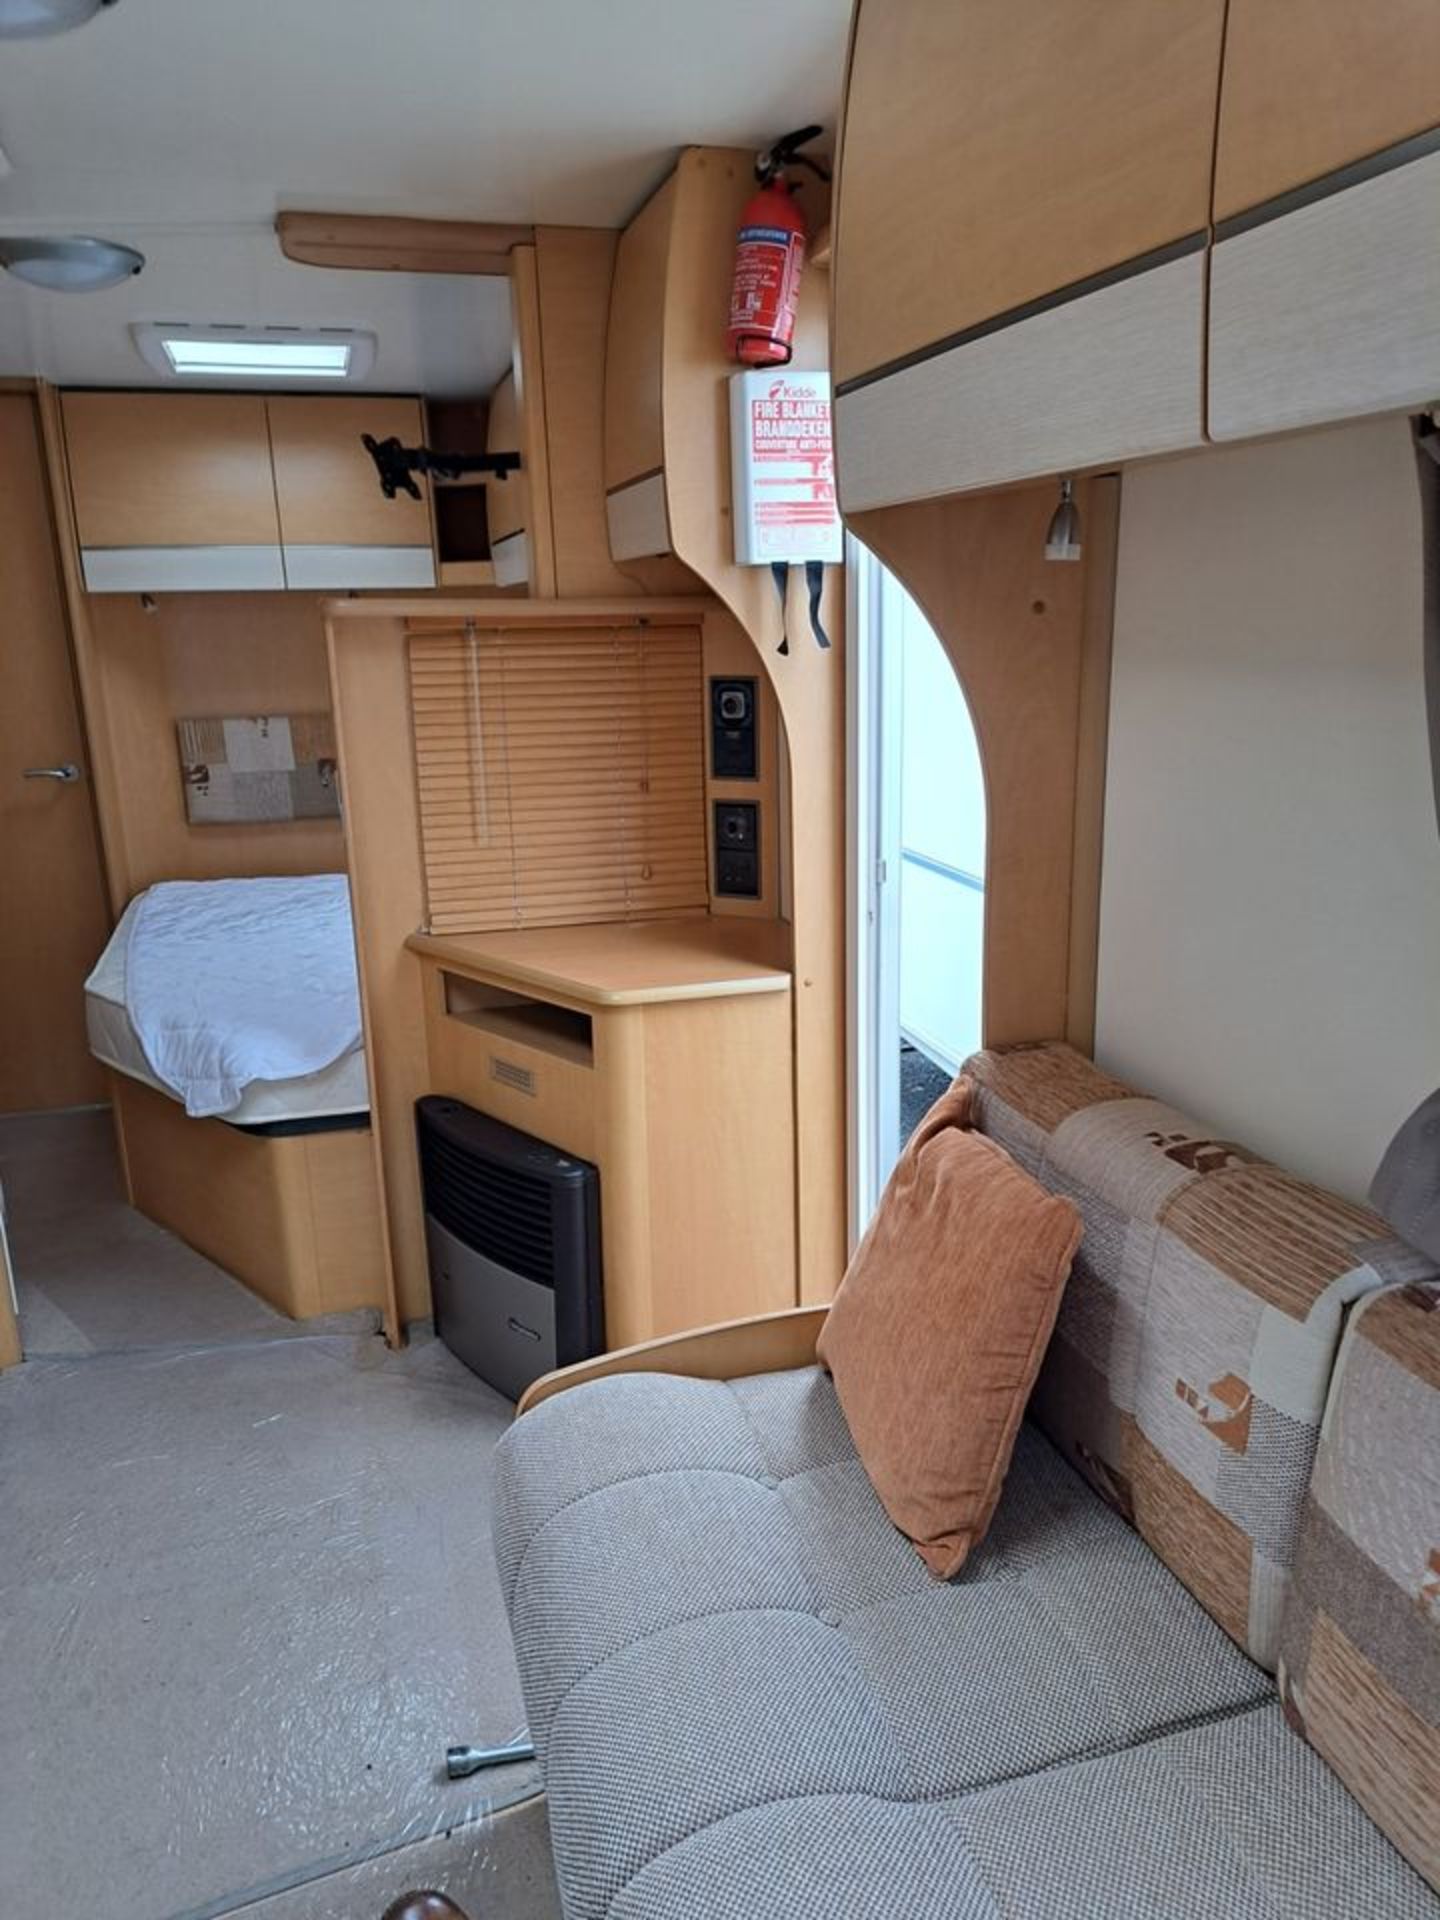 2010 Bailey Pegasus Olympus 534 Caravan in Excellent Condition - 4 Berth *NO VAT* - Image 7 of 18